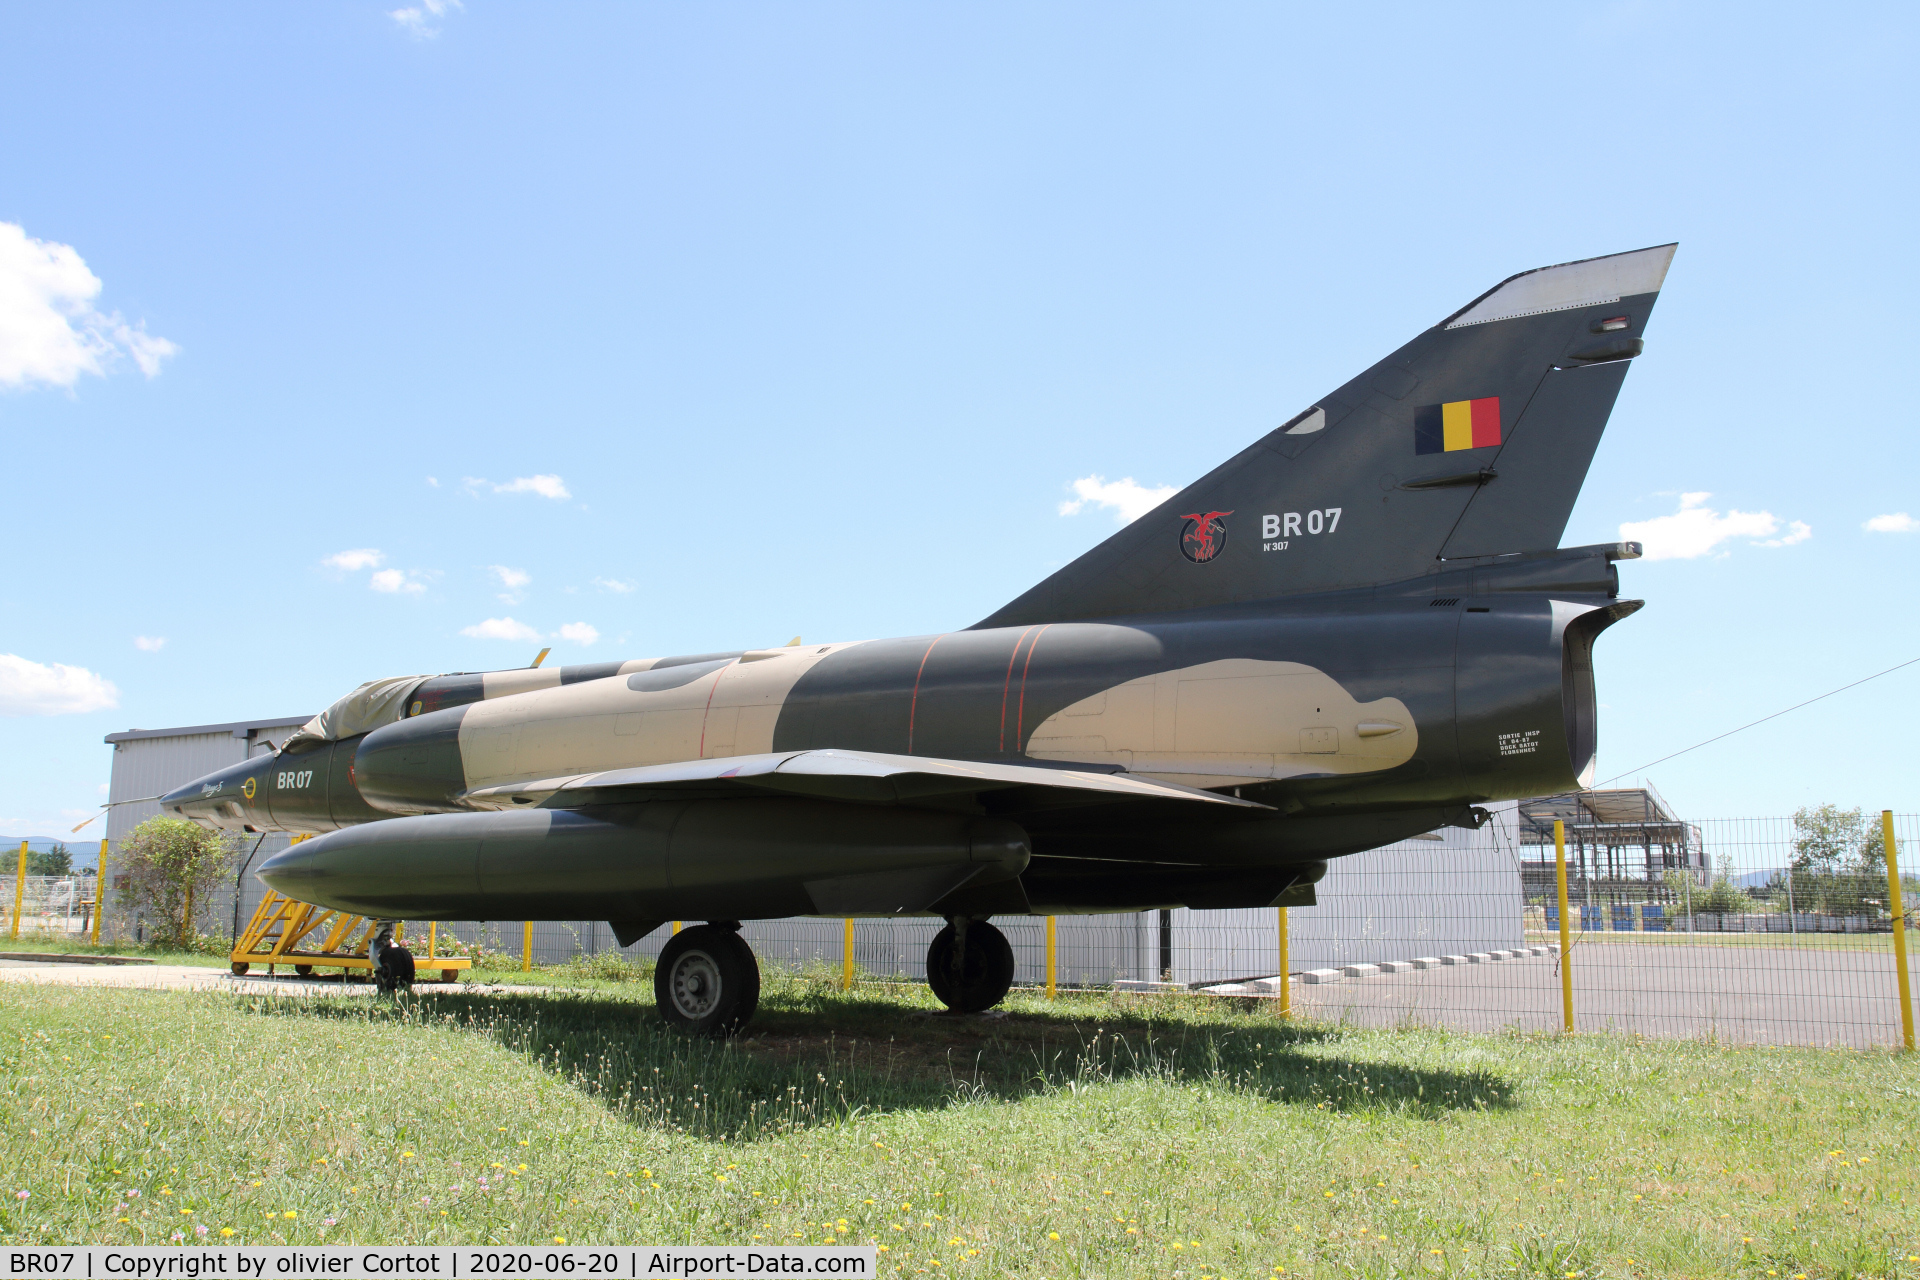 BR07, Dassault Mirage 5BR C/N 307, nest to the A6 highway